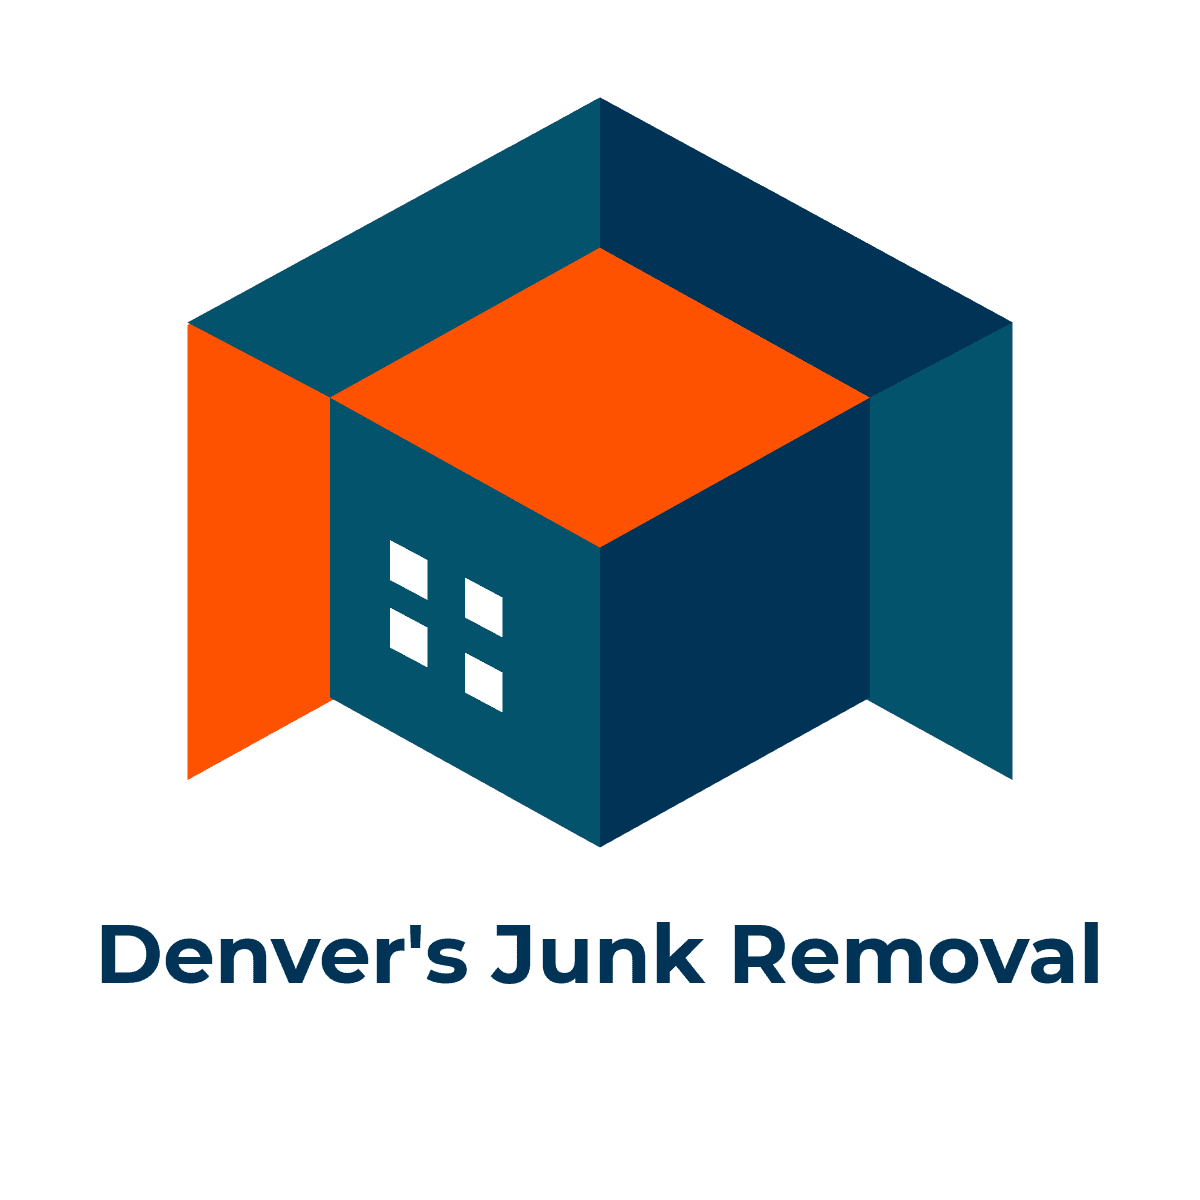 Denver's Junk Removal